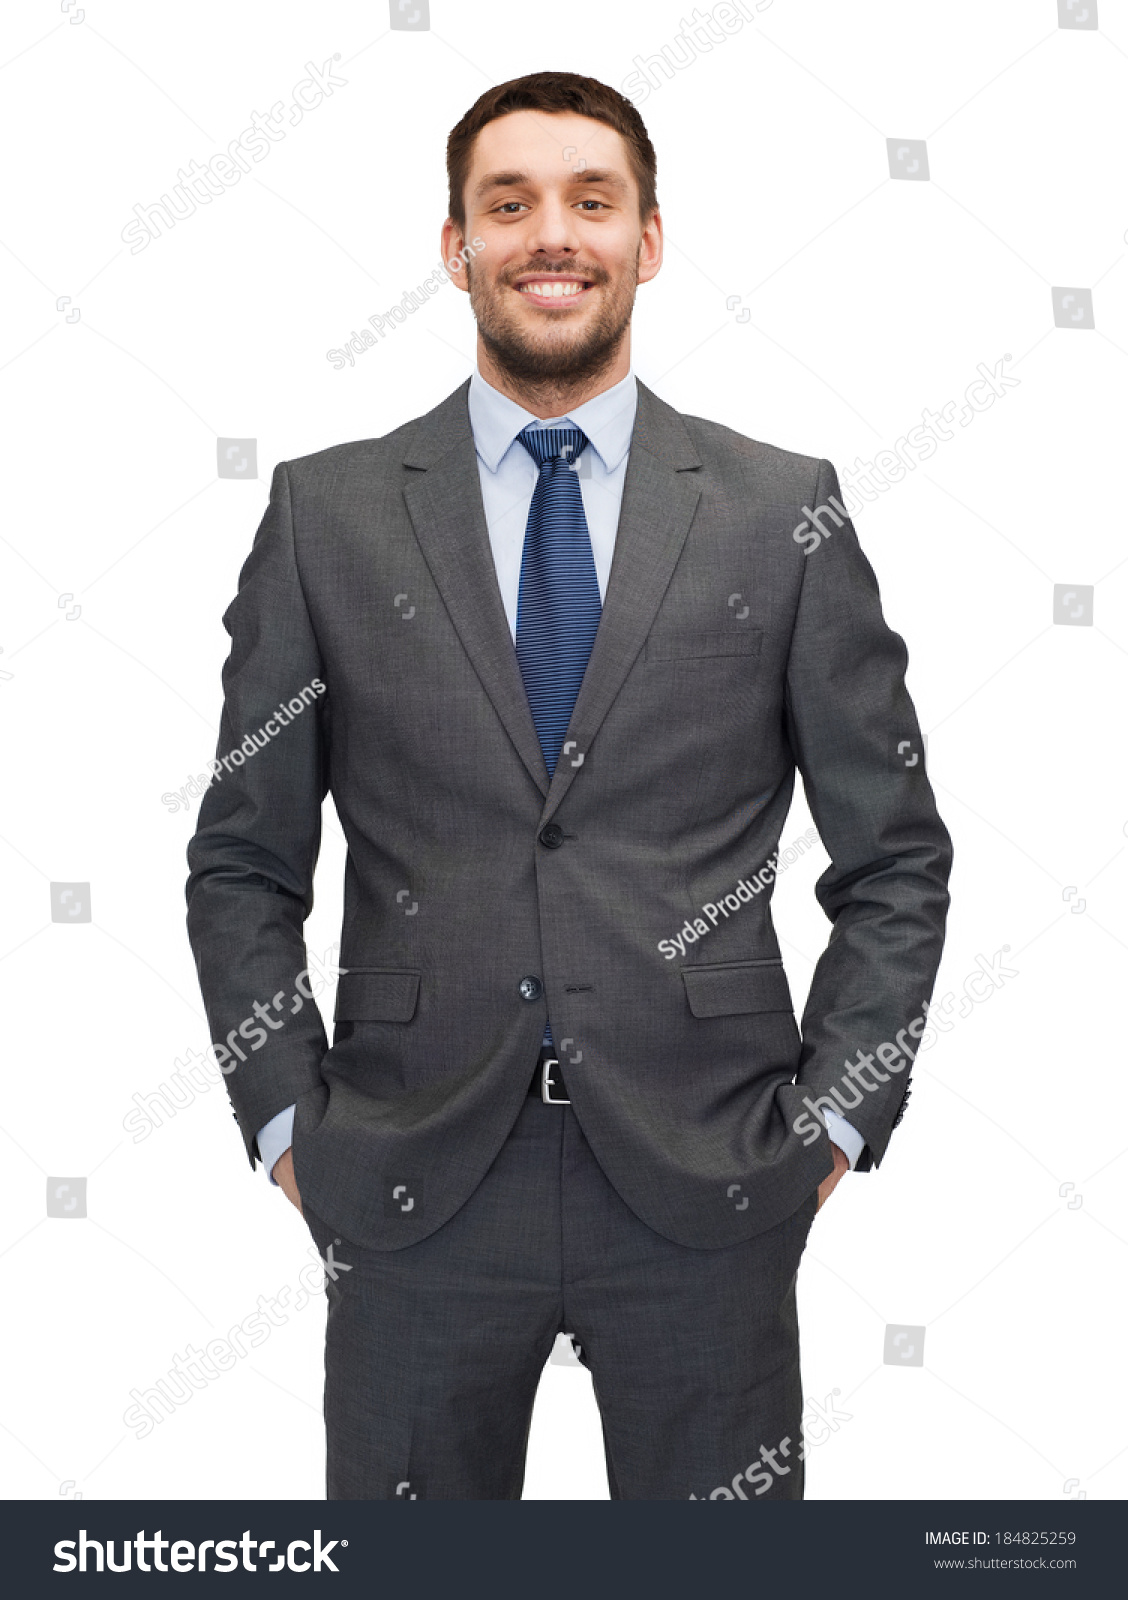 330,170 Grey suit Images, Stock Photos & Vectors | Shutterstock